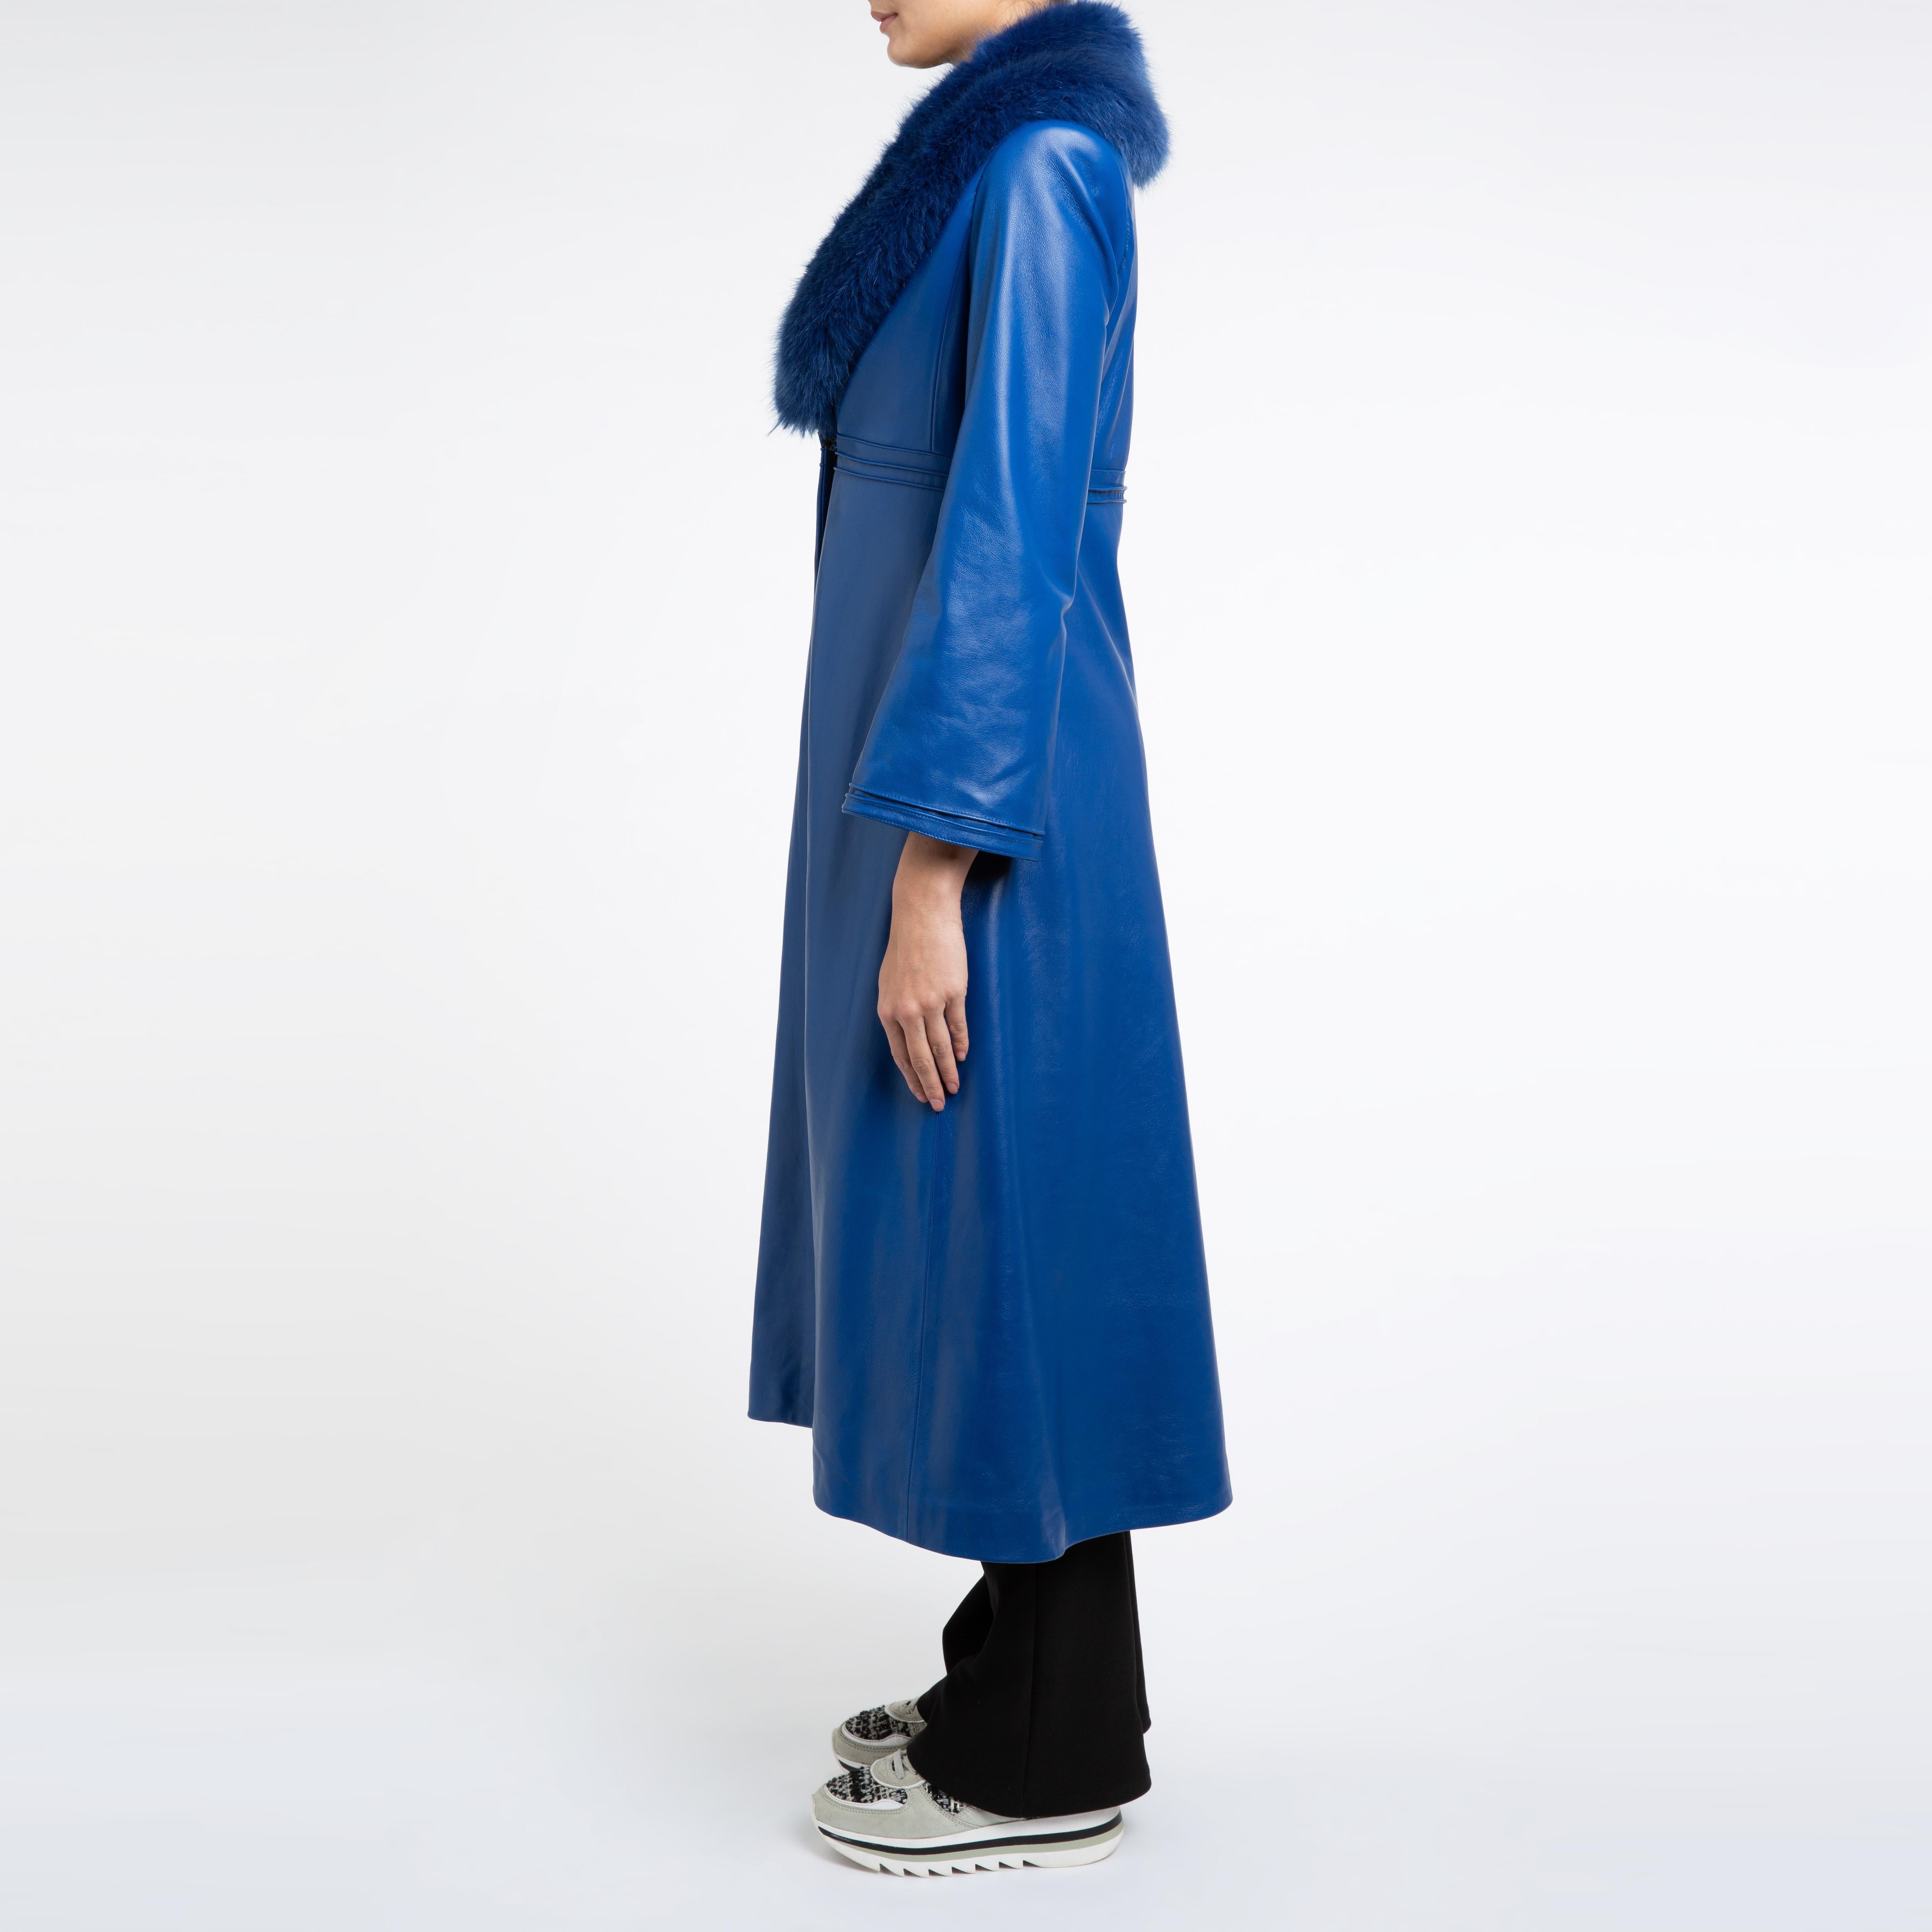 Women's Verheyen London Edward Leather Coat in Blue with Faux Fur - Size uk 14 For Sale